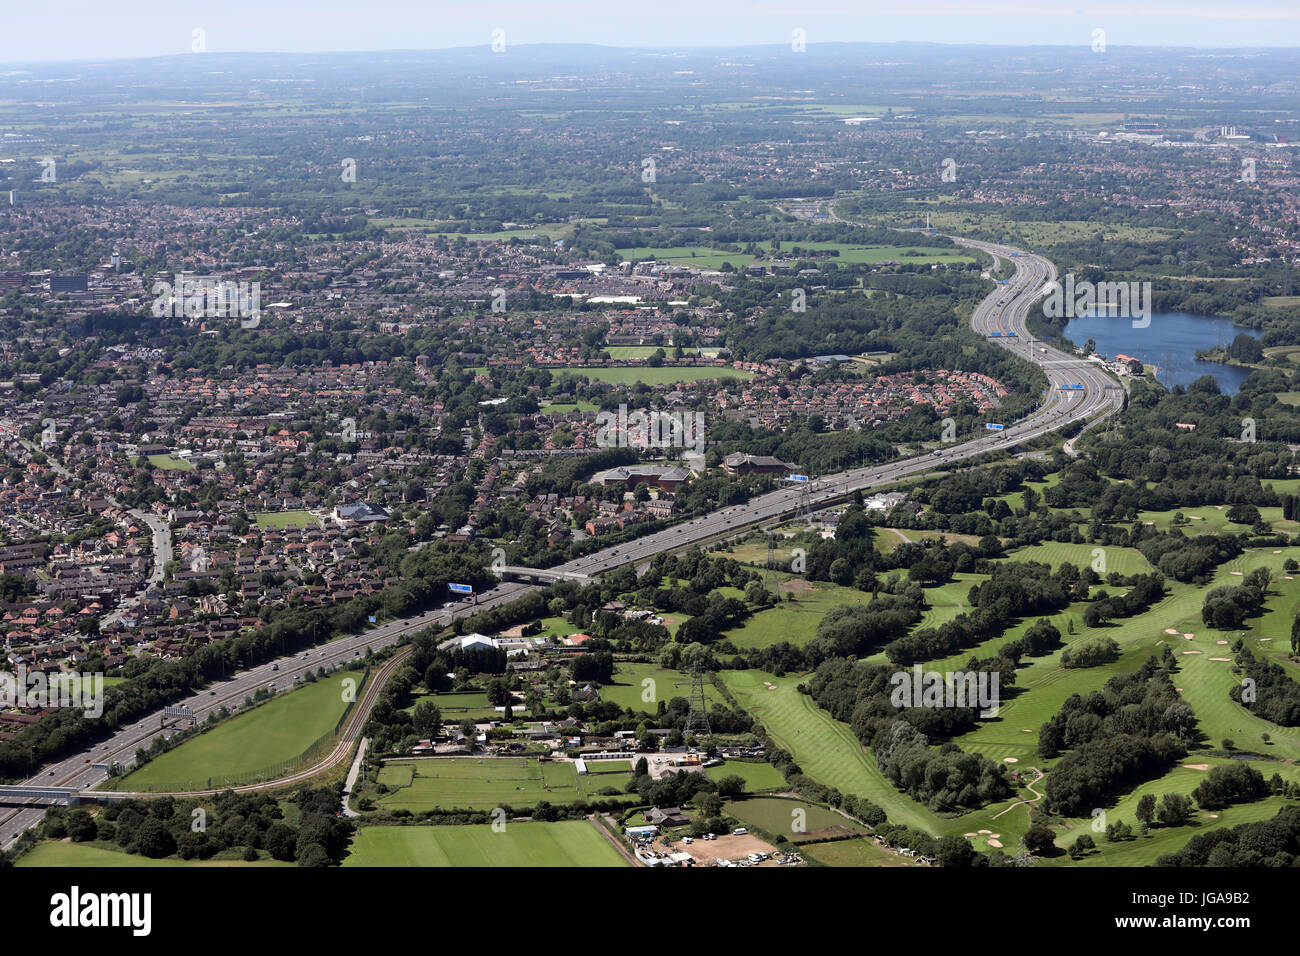 Vue aérienne de la M60 à Manchester avec de l'eau Vente Park, Royaume-Uni Banque D'Images